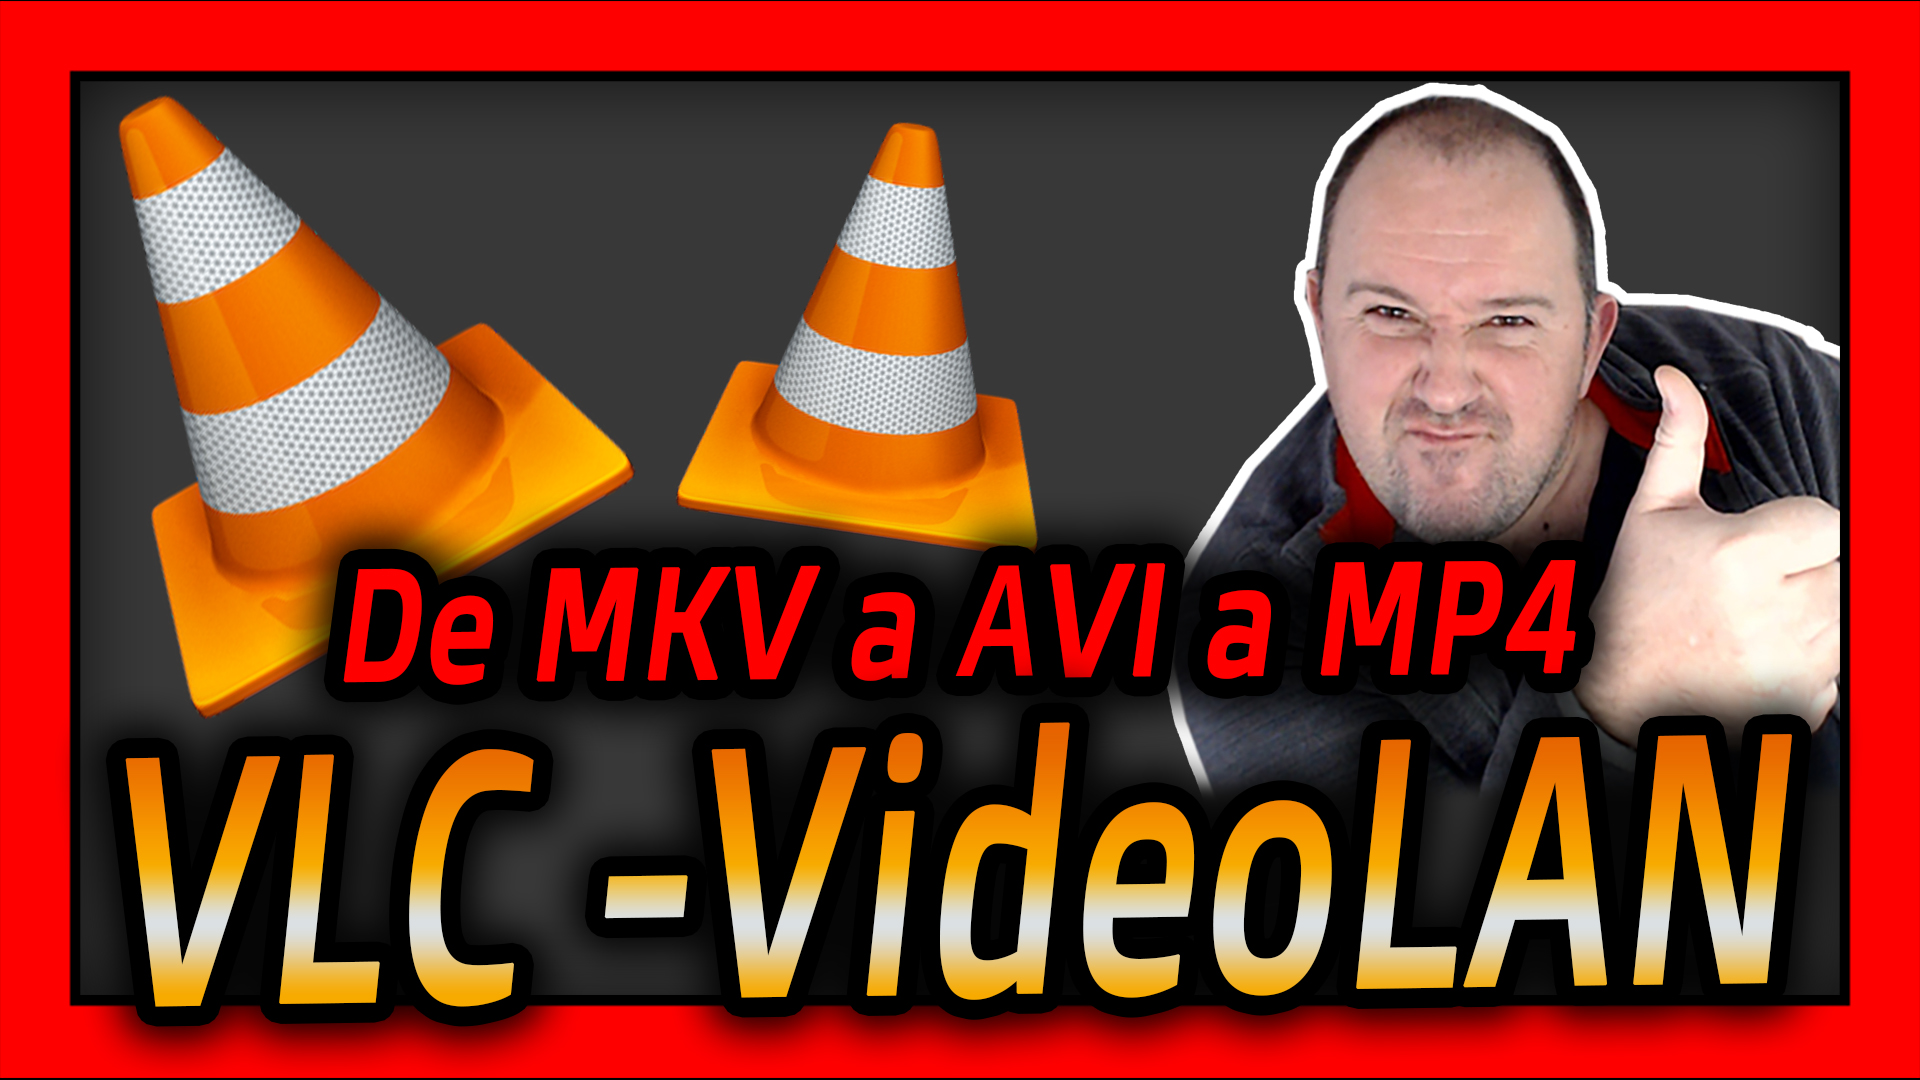 Como pasar De MKV a AVi a MP4 con VLC VideoLAN